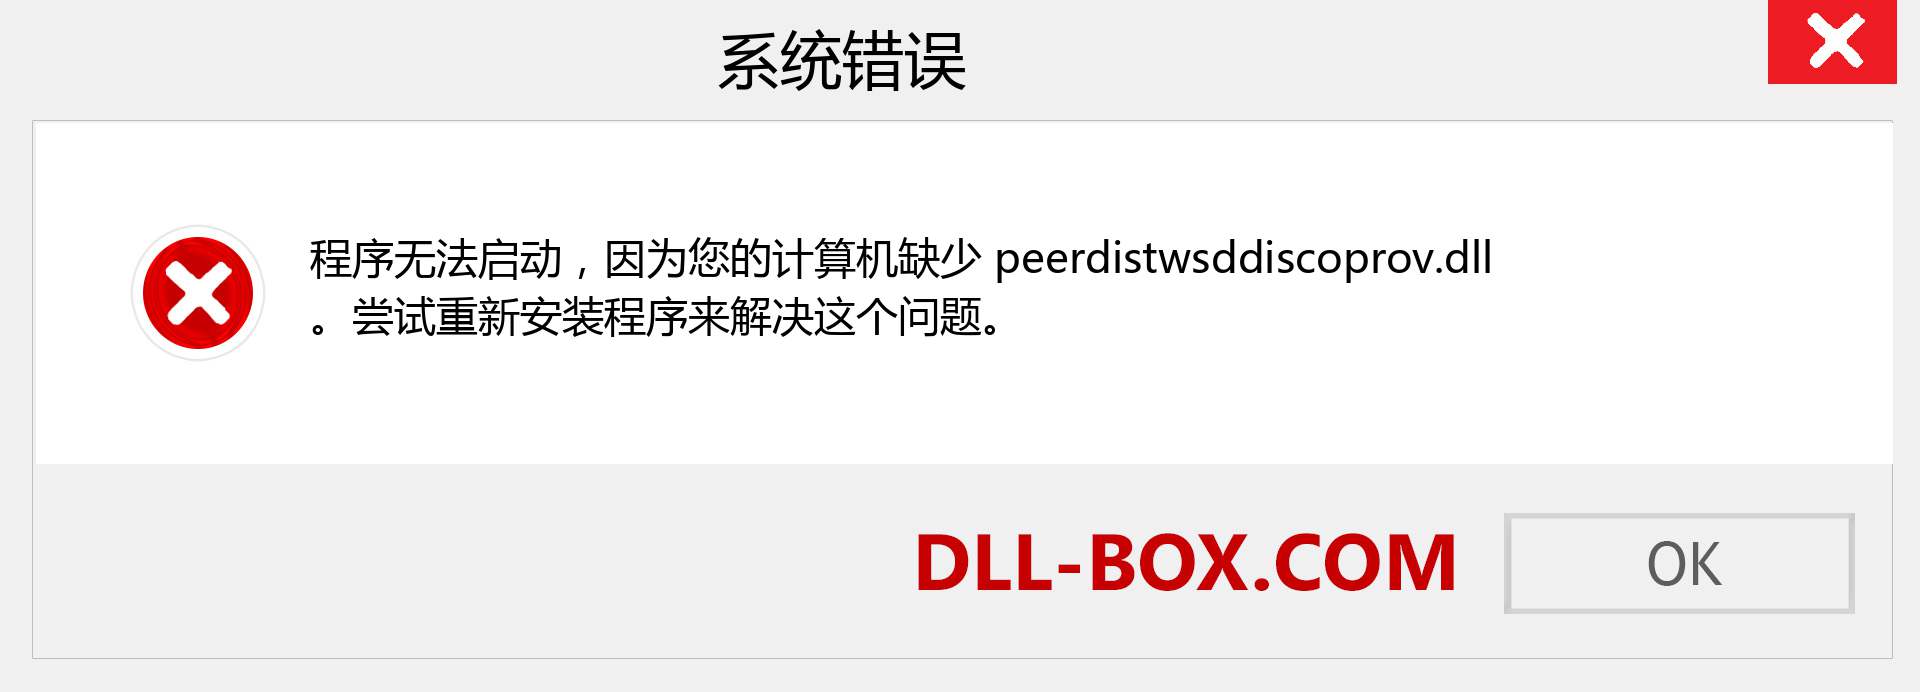 peerdistwsddiscoprov.dll 文件丢失？。 适用于 Windows 7、8、10 的下载 - 修复 Windows、照片、图像上的 peerdistwsddiscoprov dll 丢失错误